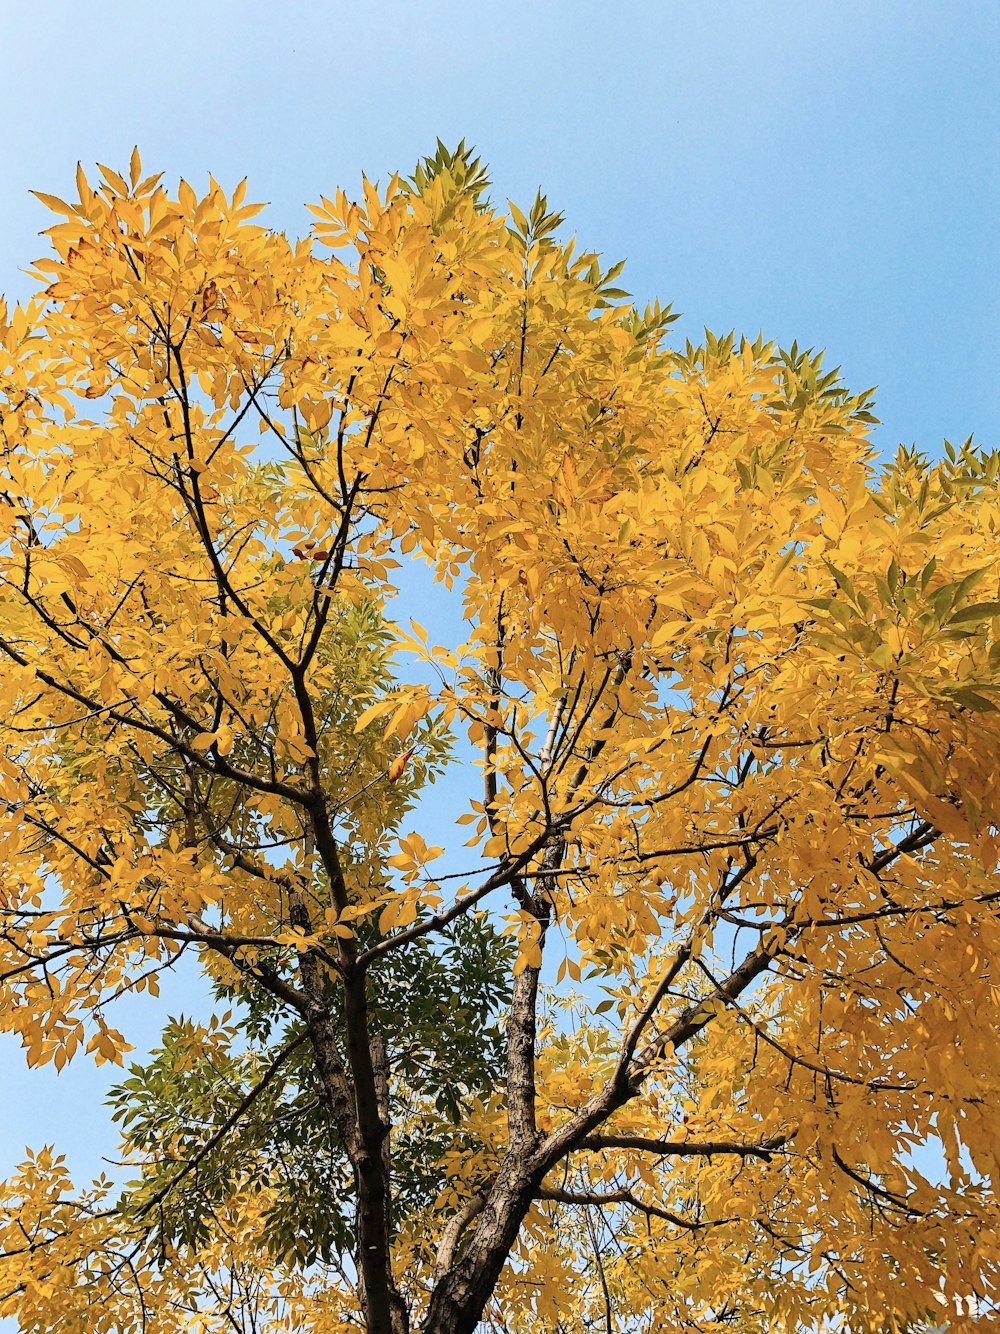 배경에 노란 나뭇잎과 푸른 하늘이 있는 나무